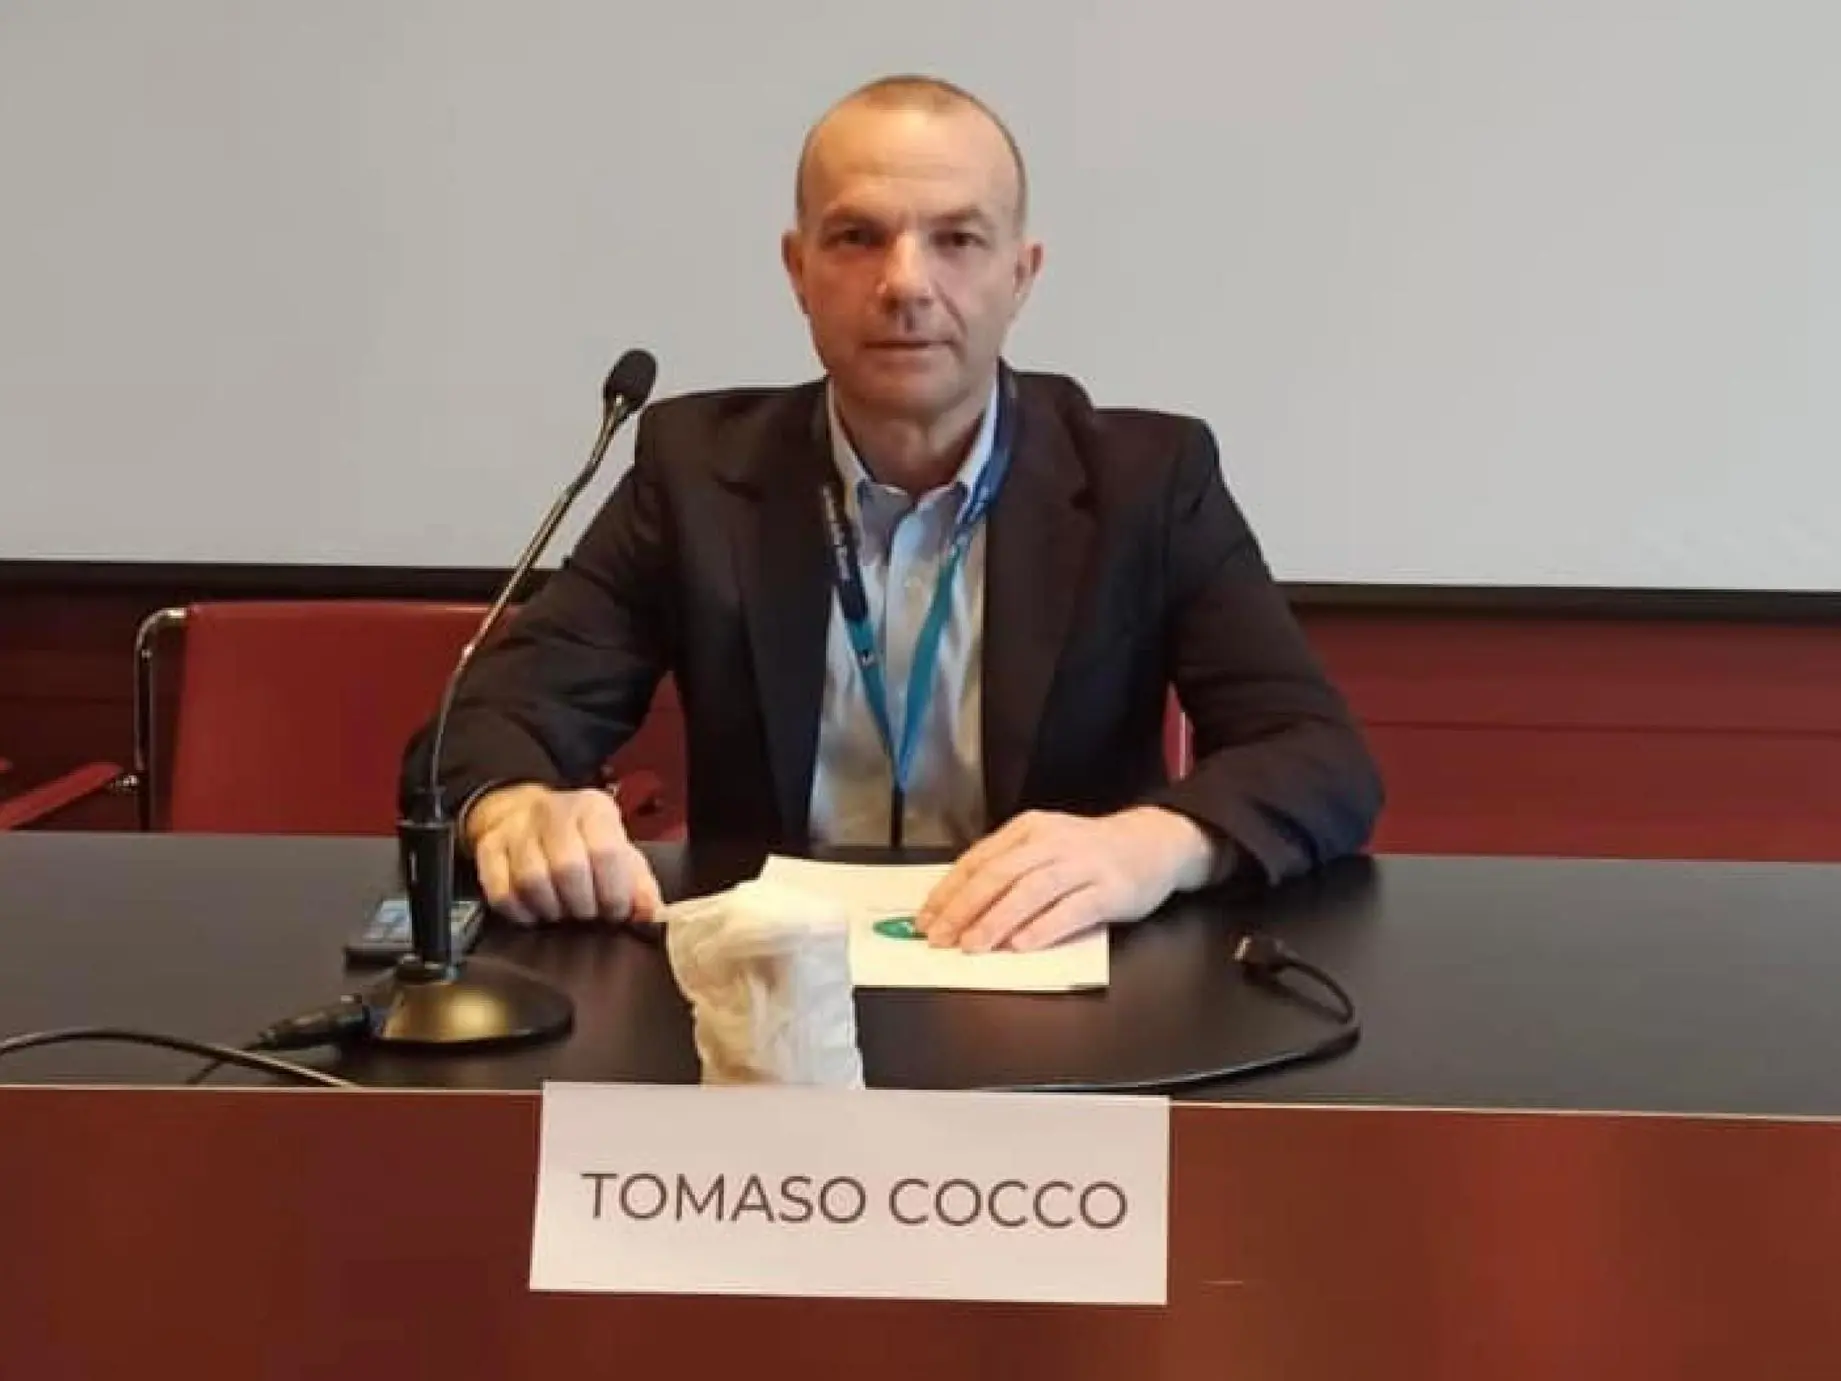 Tomaso Cocco, responsabile della terapia del dolore all'ospedale Marino di Cagliari, in una foto tratta dal suo profilo Facebook